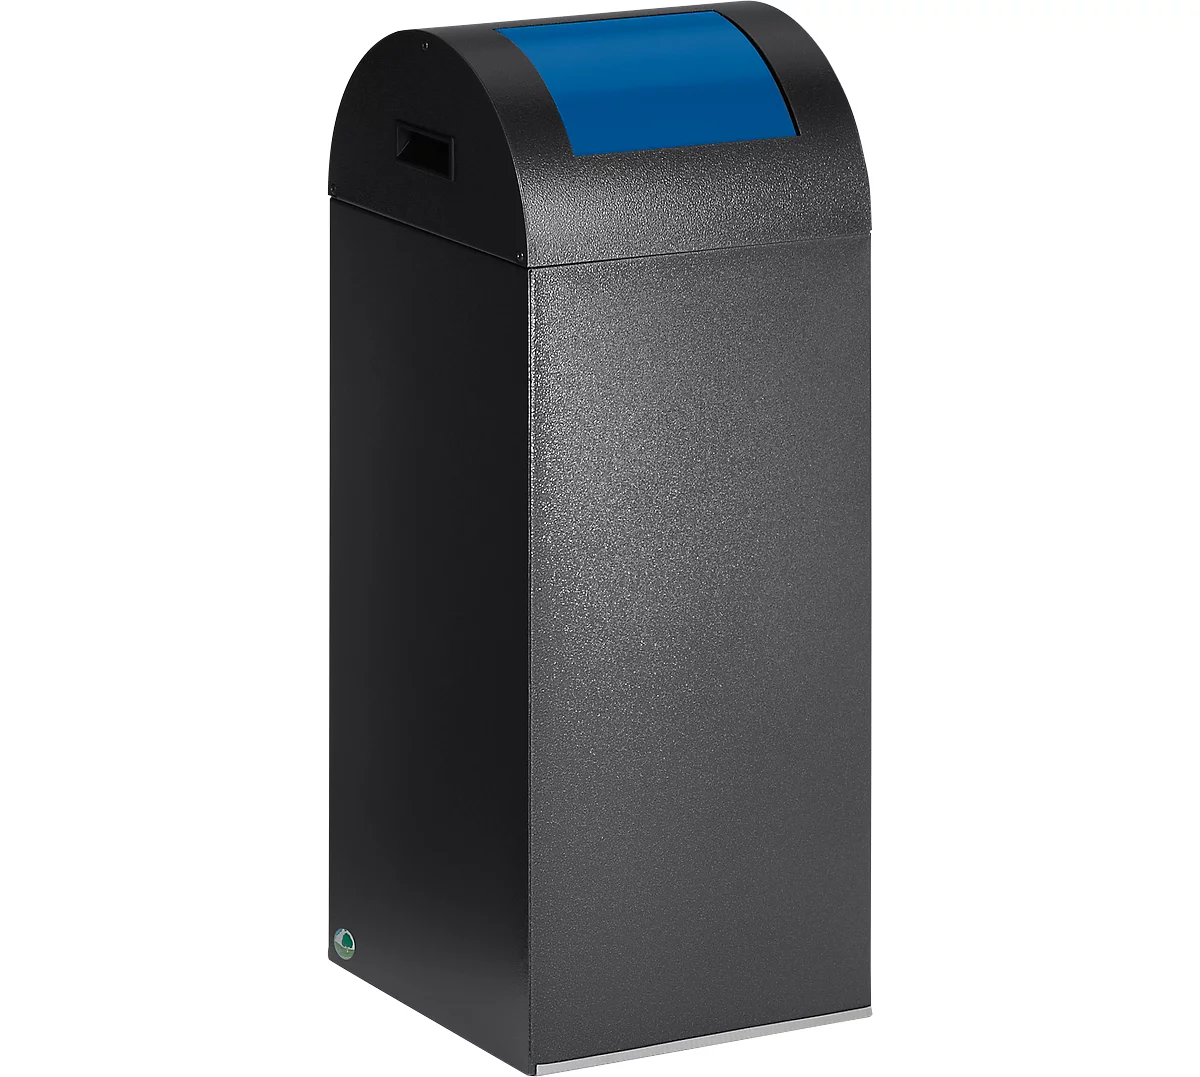 Selbstlöschende Wertstoff-Abfallsammler 55R, antiksilber/blau